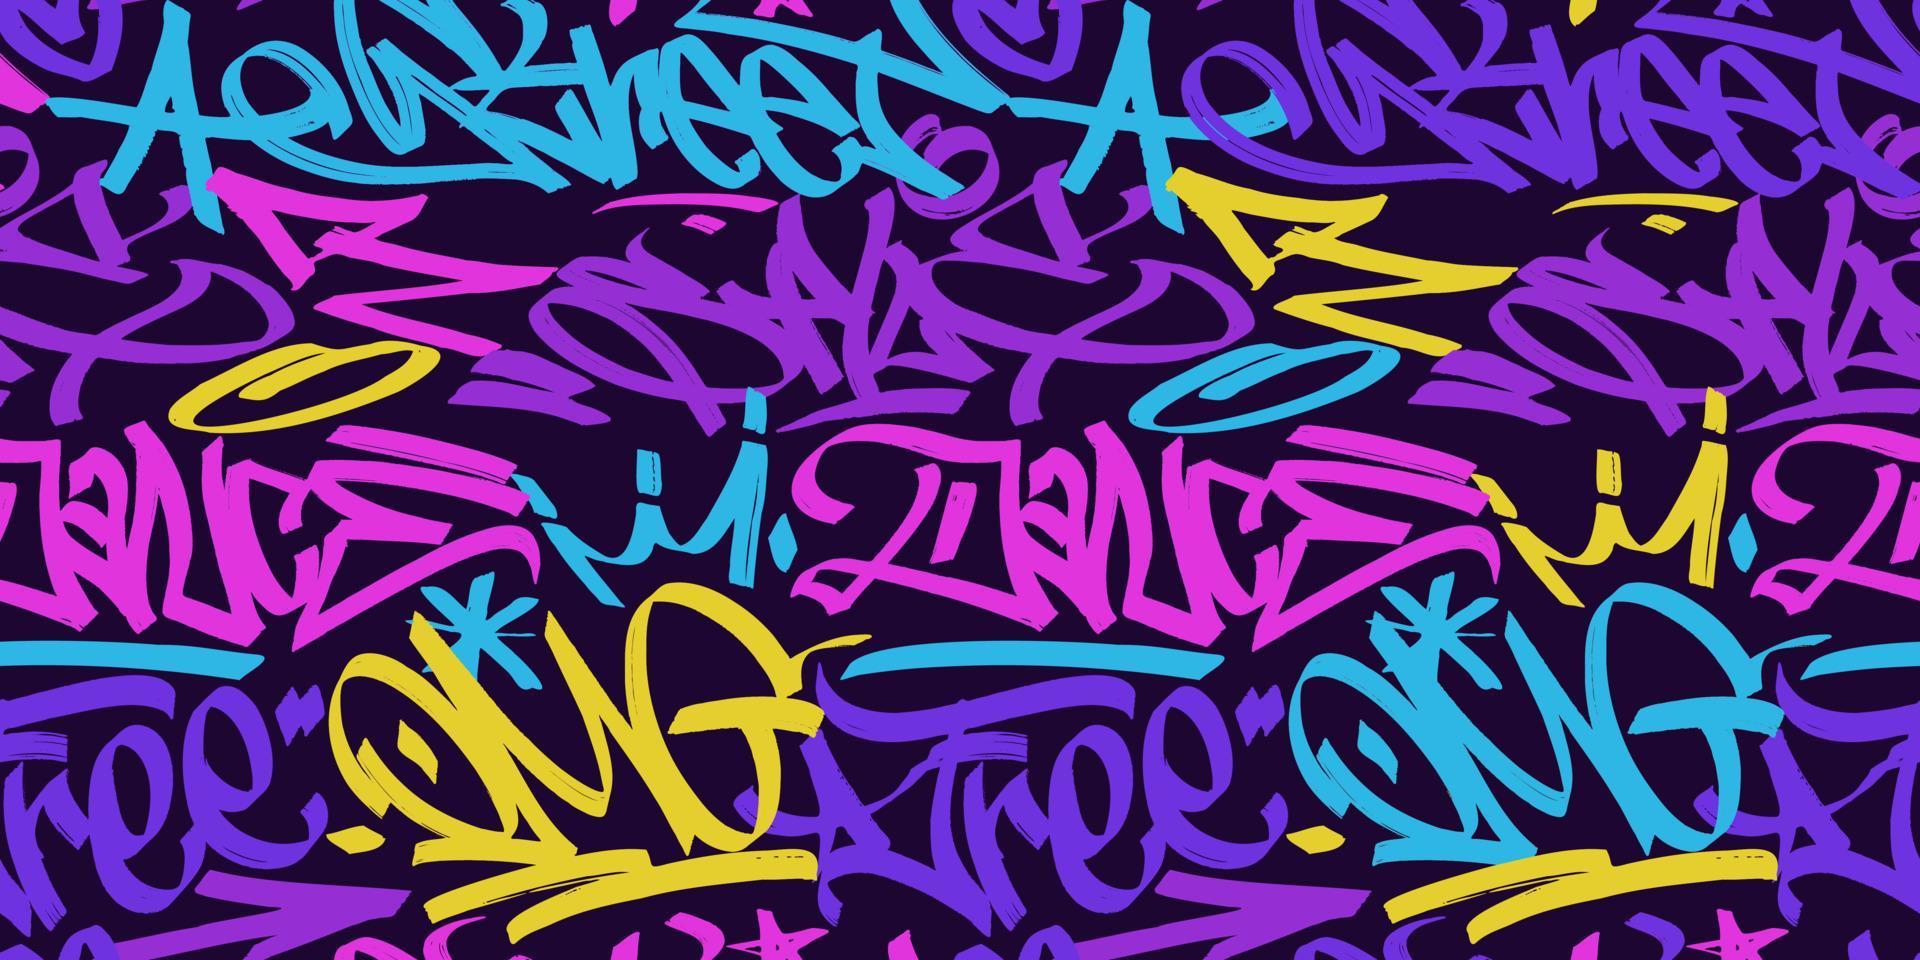 veelkleurig graffiti achtergrond met markeerstift brieven, helder gekleurde belettering tags in de stijl van graffiti straat kunst. vector illustratie naadloos patroon